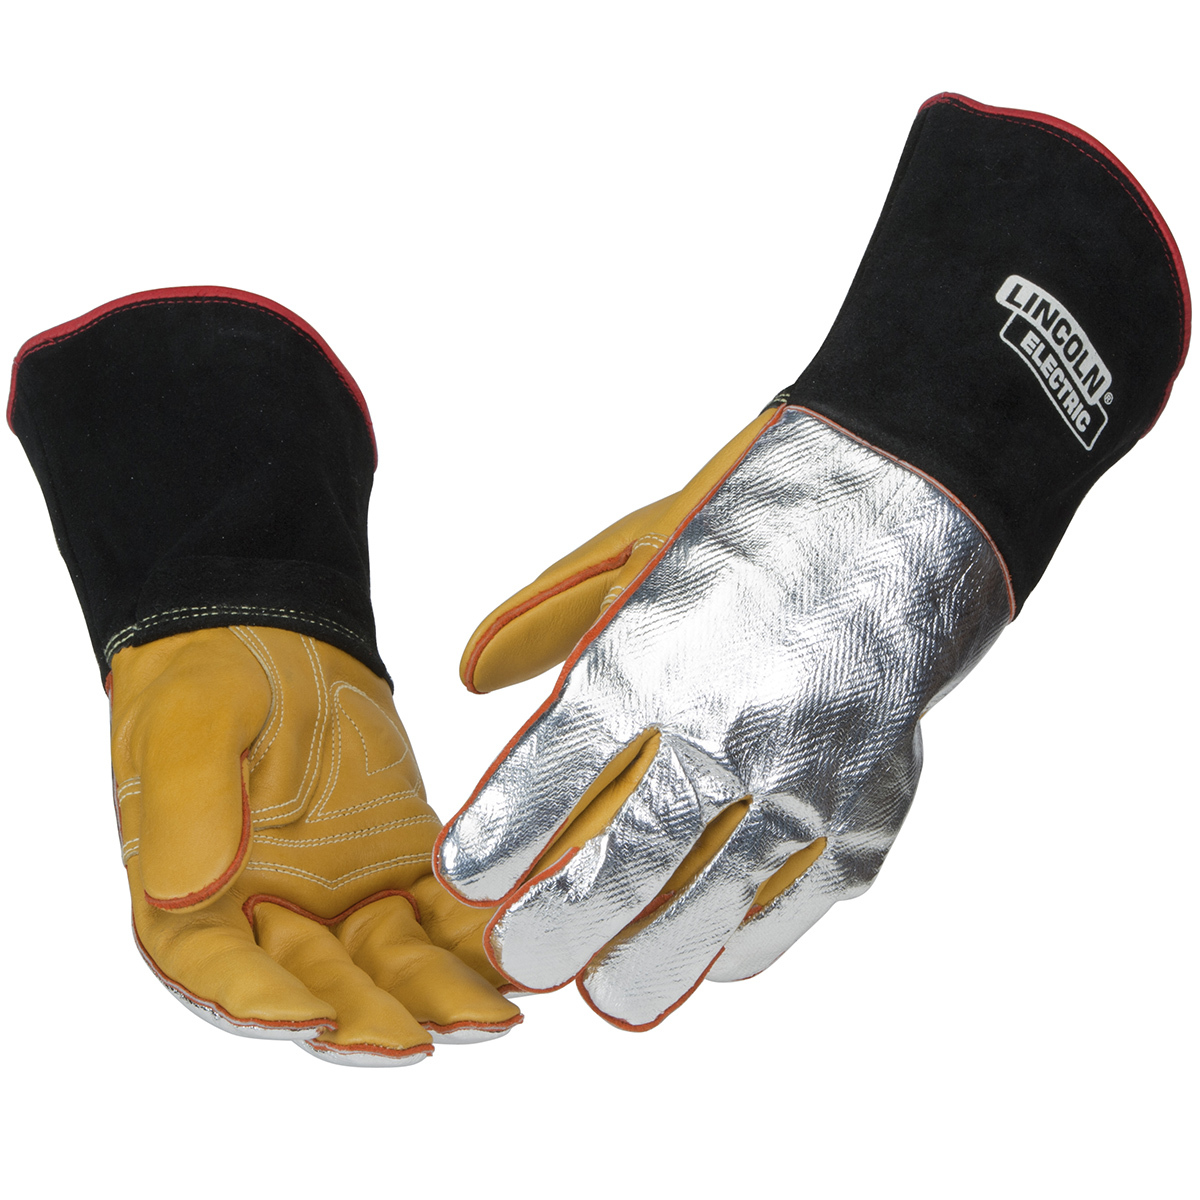 Welders Gauntlet /Gloves yellow and black 